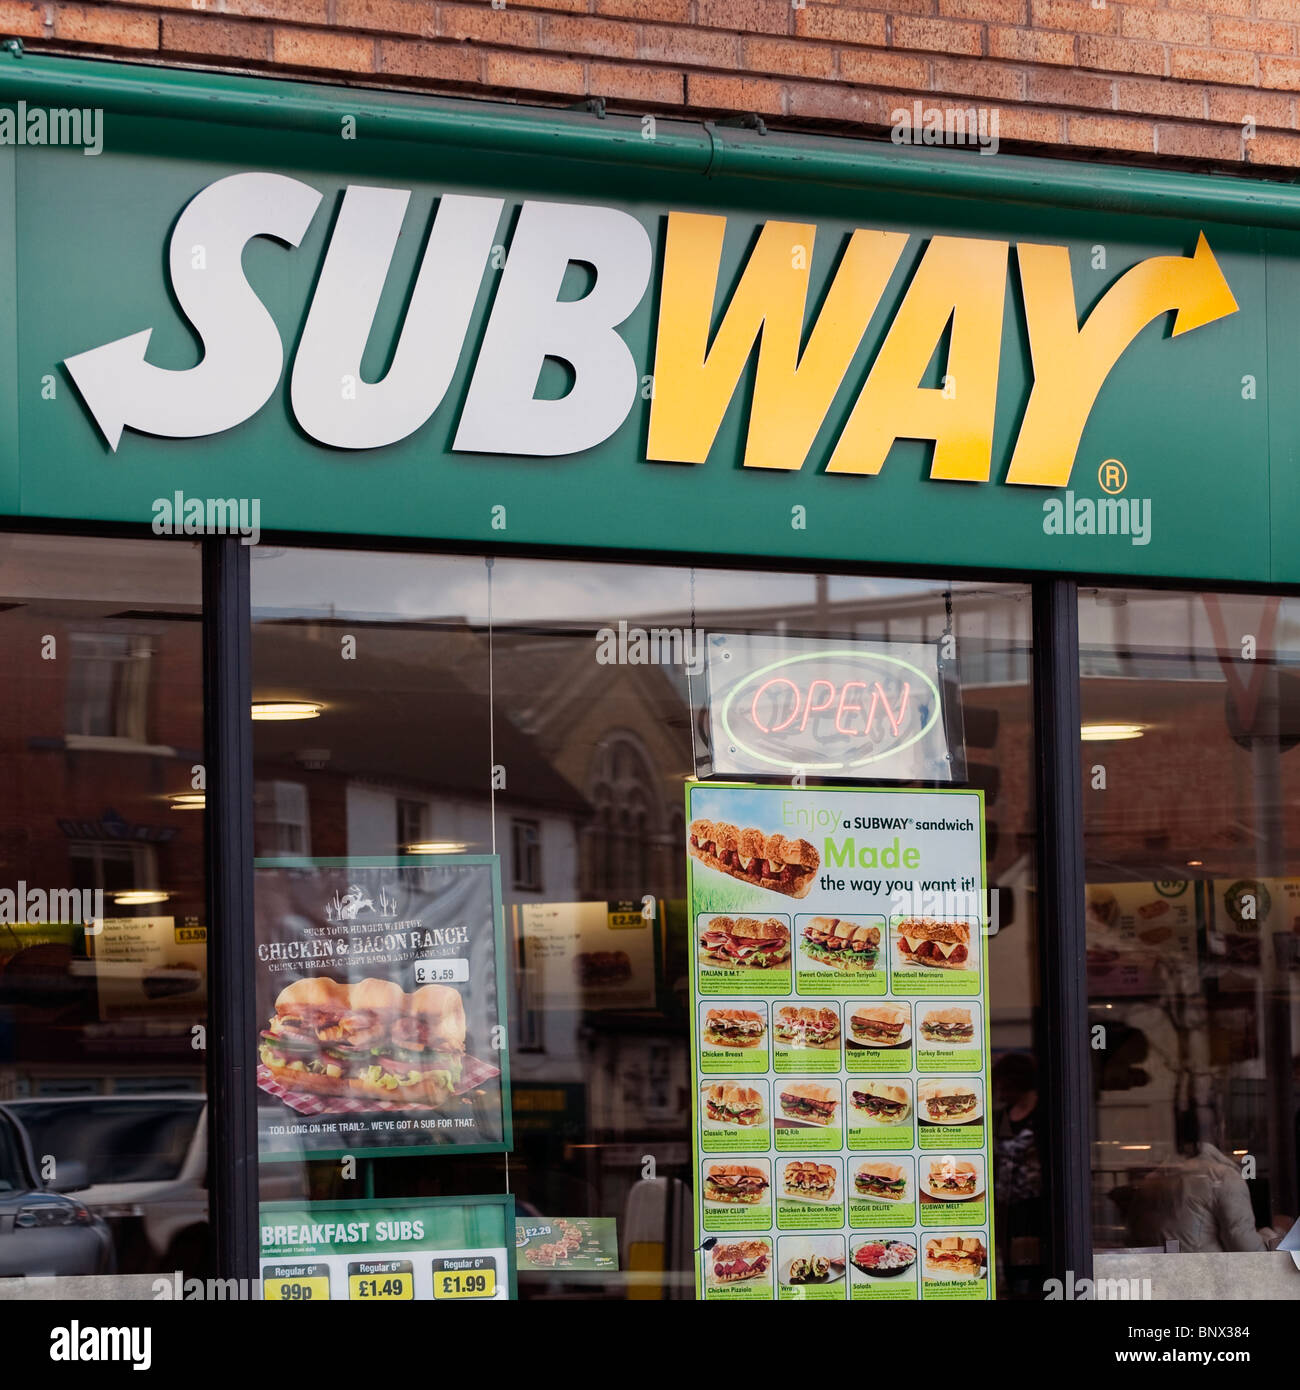 Subway Restaurant in Hereford City, Großbritannien. Subway Sandwich-Shop. Stockfoto